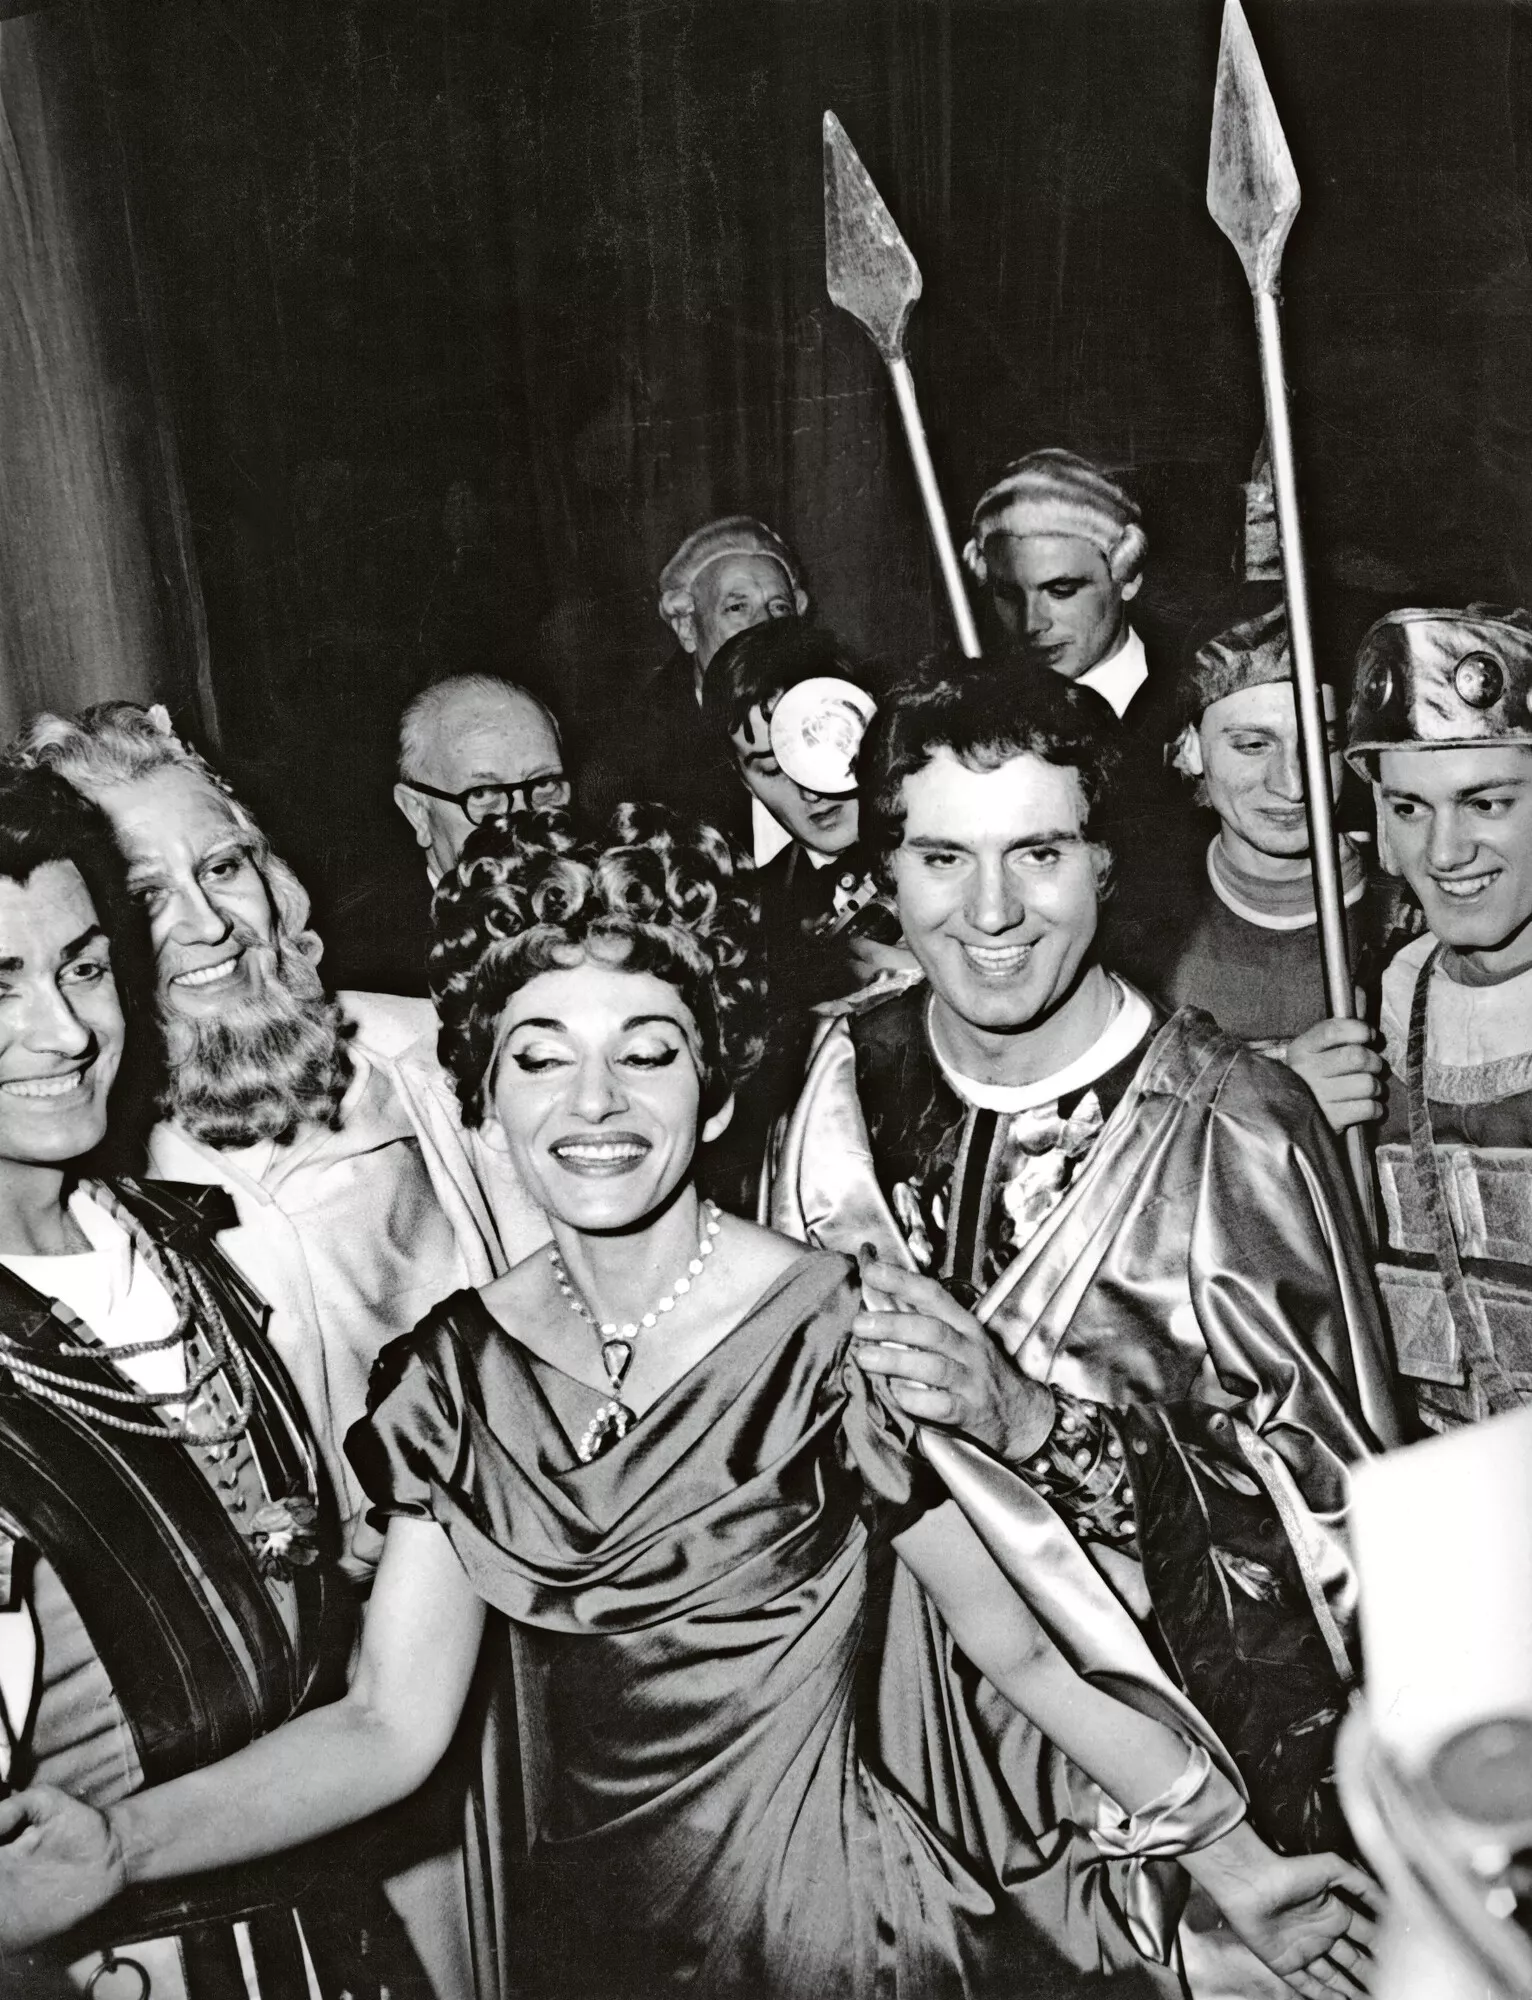 Hymyilevä Maria Callas voittoisan esityksen jälkeen Milanon La Scalassa joulukuussa 1960 hänen laulettuaan Paolinan roolin Gaetano Donizzettin oopperassa Poliuto. Callaksen vieressä baritoni Ettore Bastianini.